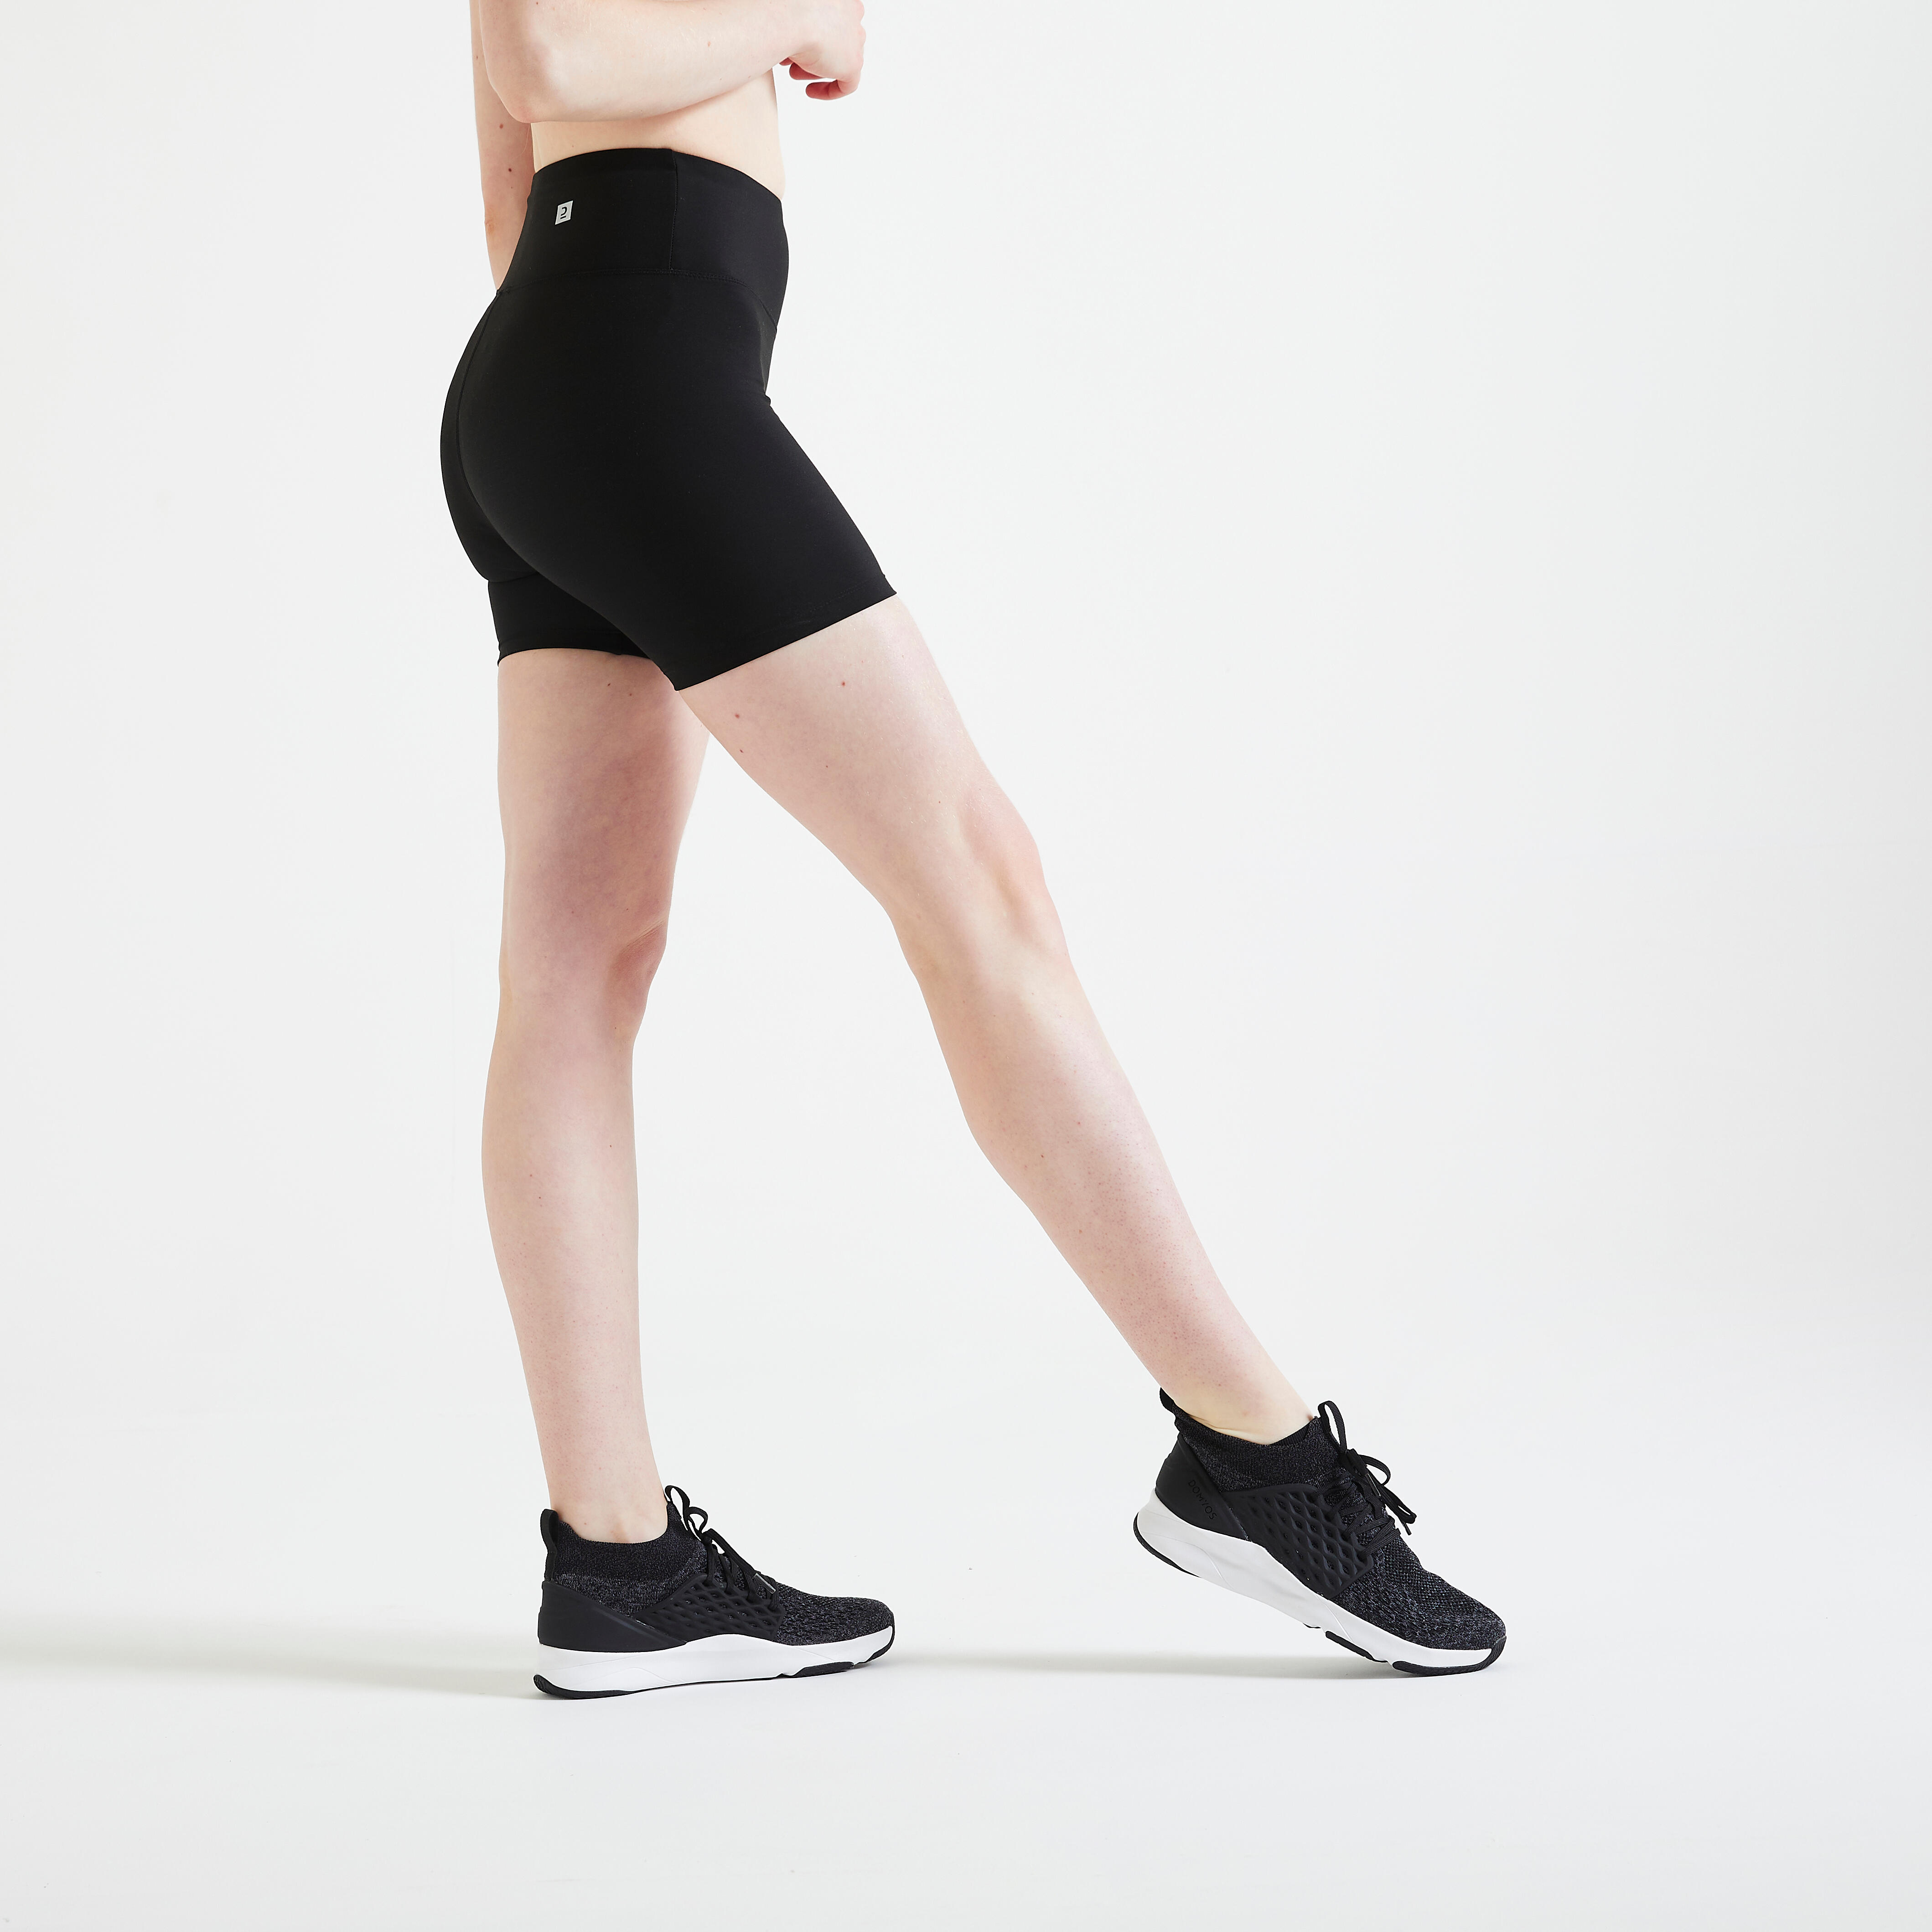 Women's gym shorts, black | NoPain Sportswear